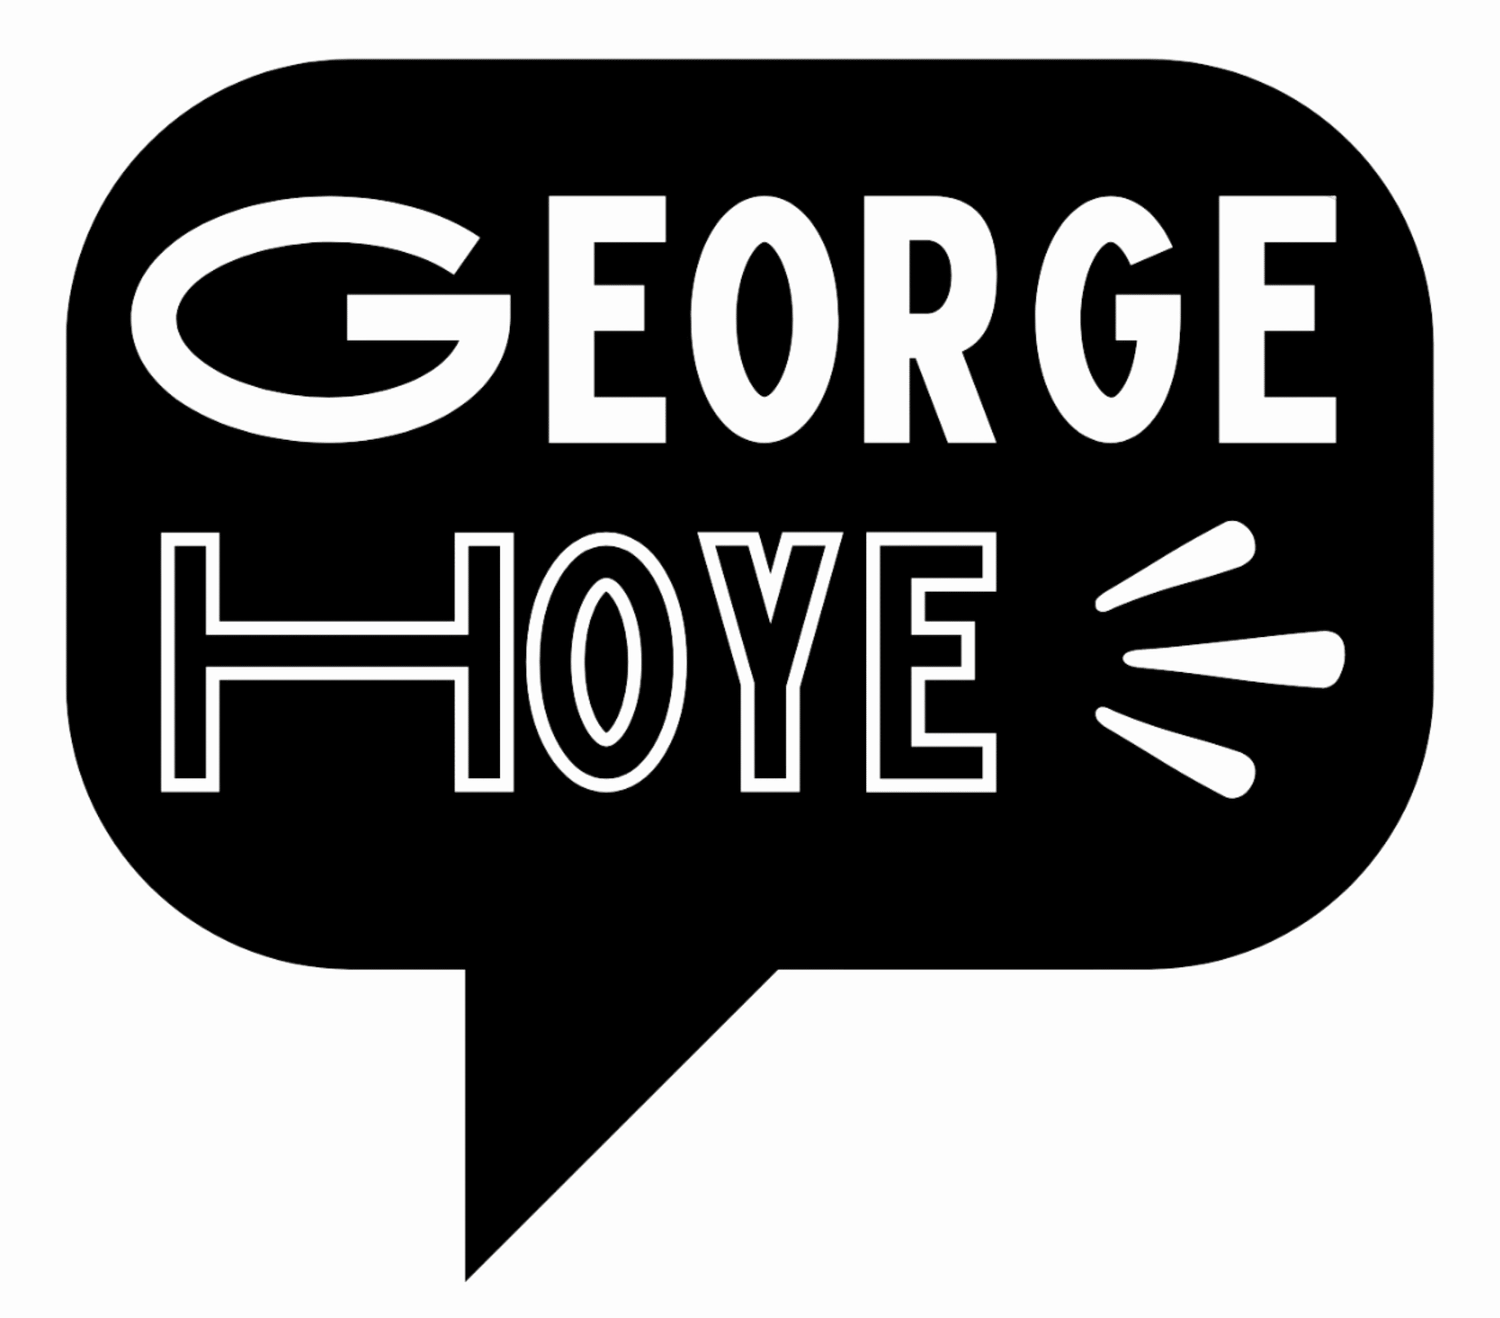 George Hoye